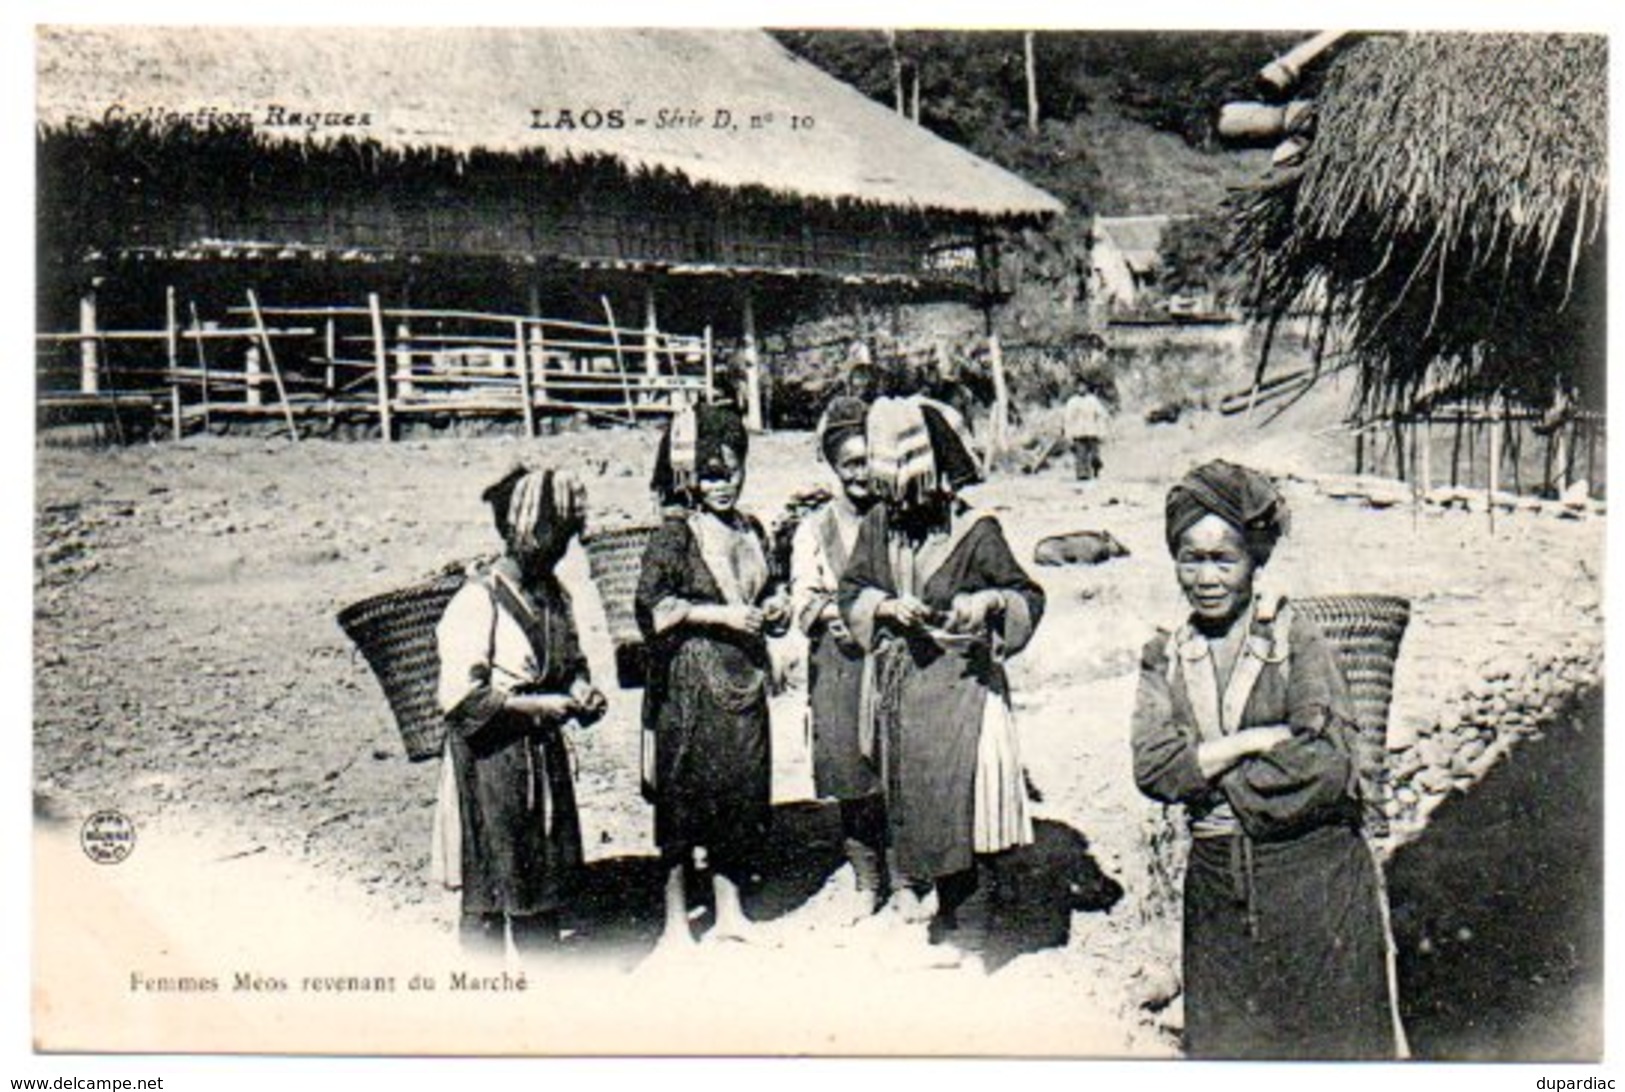 Asie / LAOS : Femmes Méos Revenant Du Marché. (Collection Raquez Série D, N° 10). - Laos